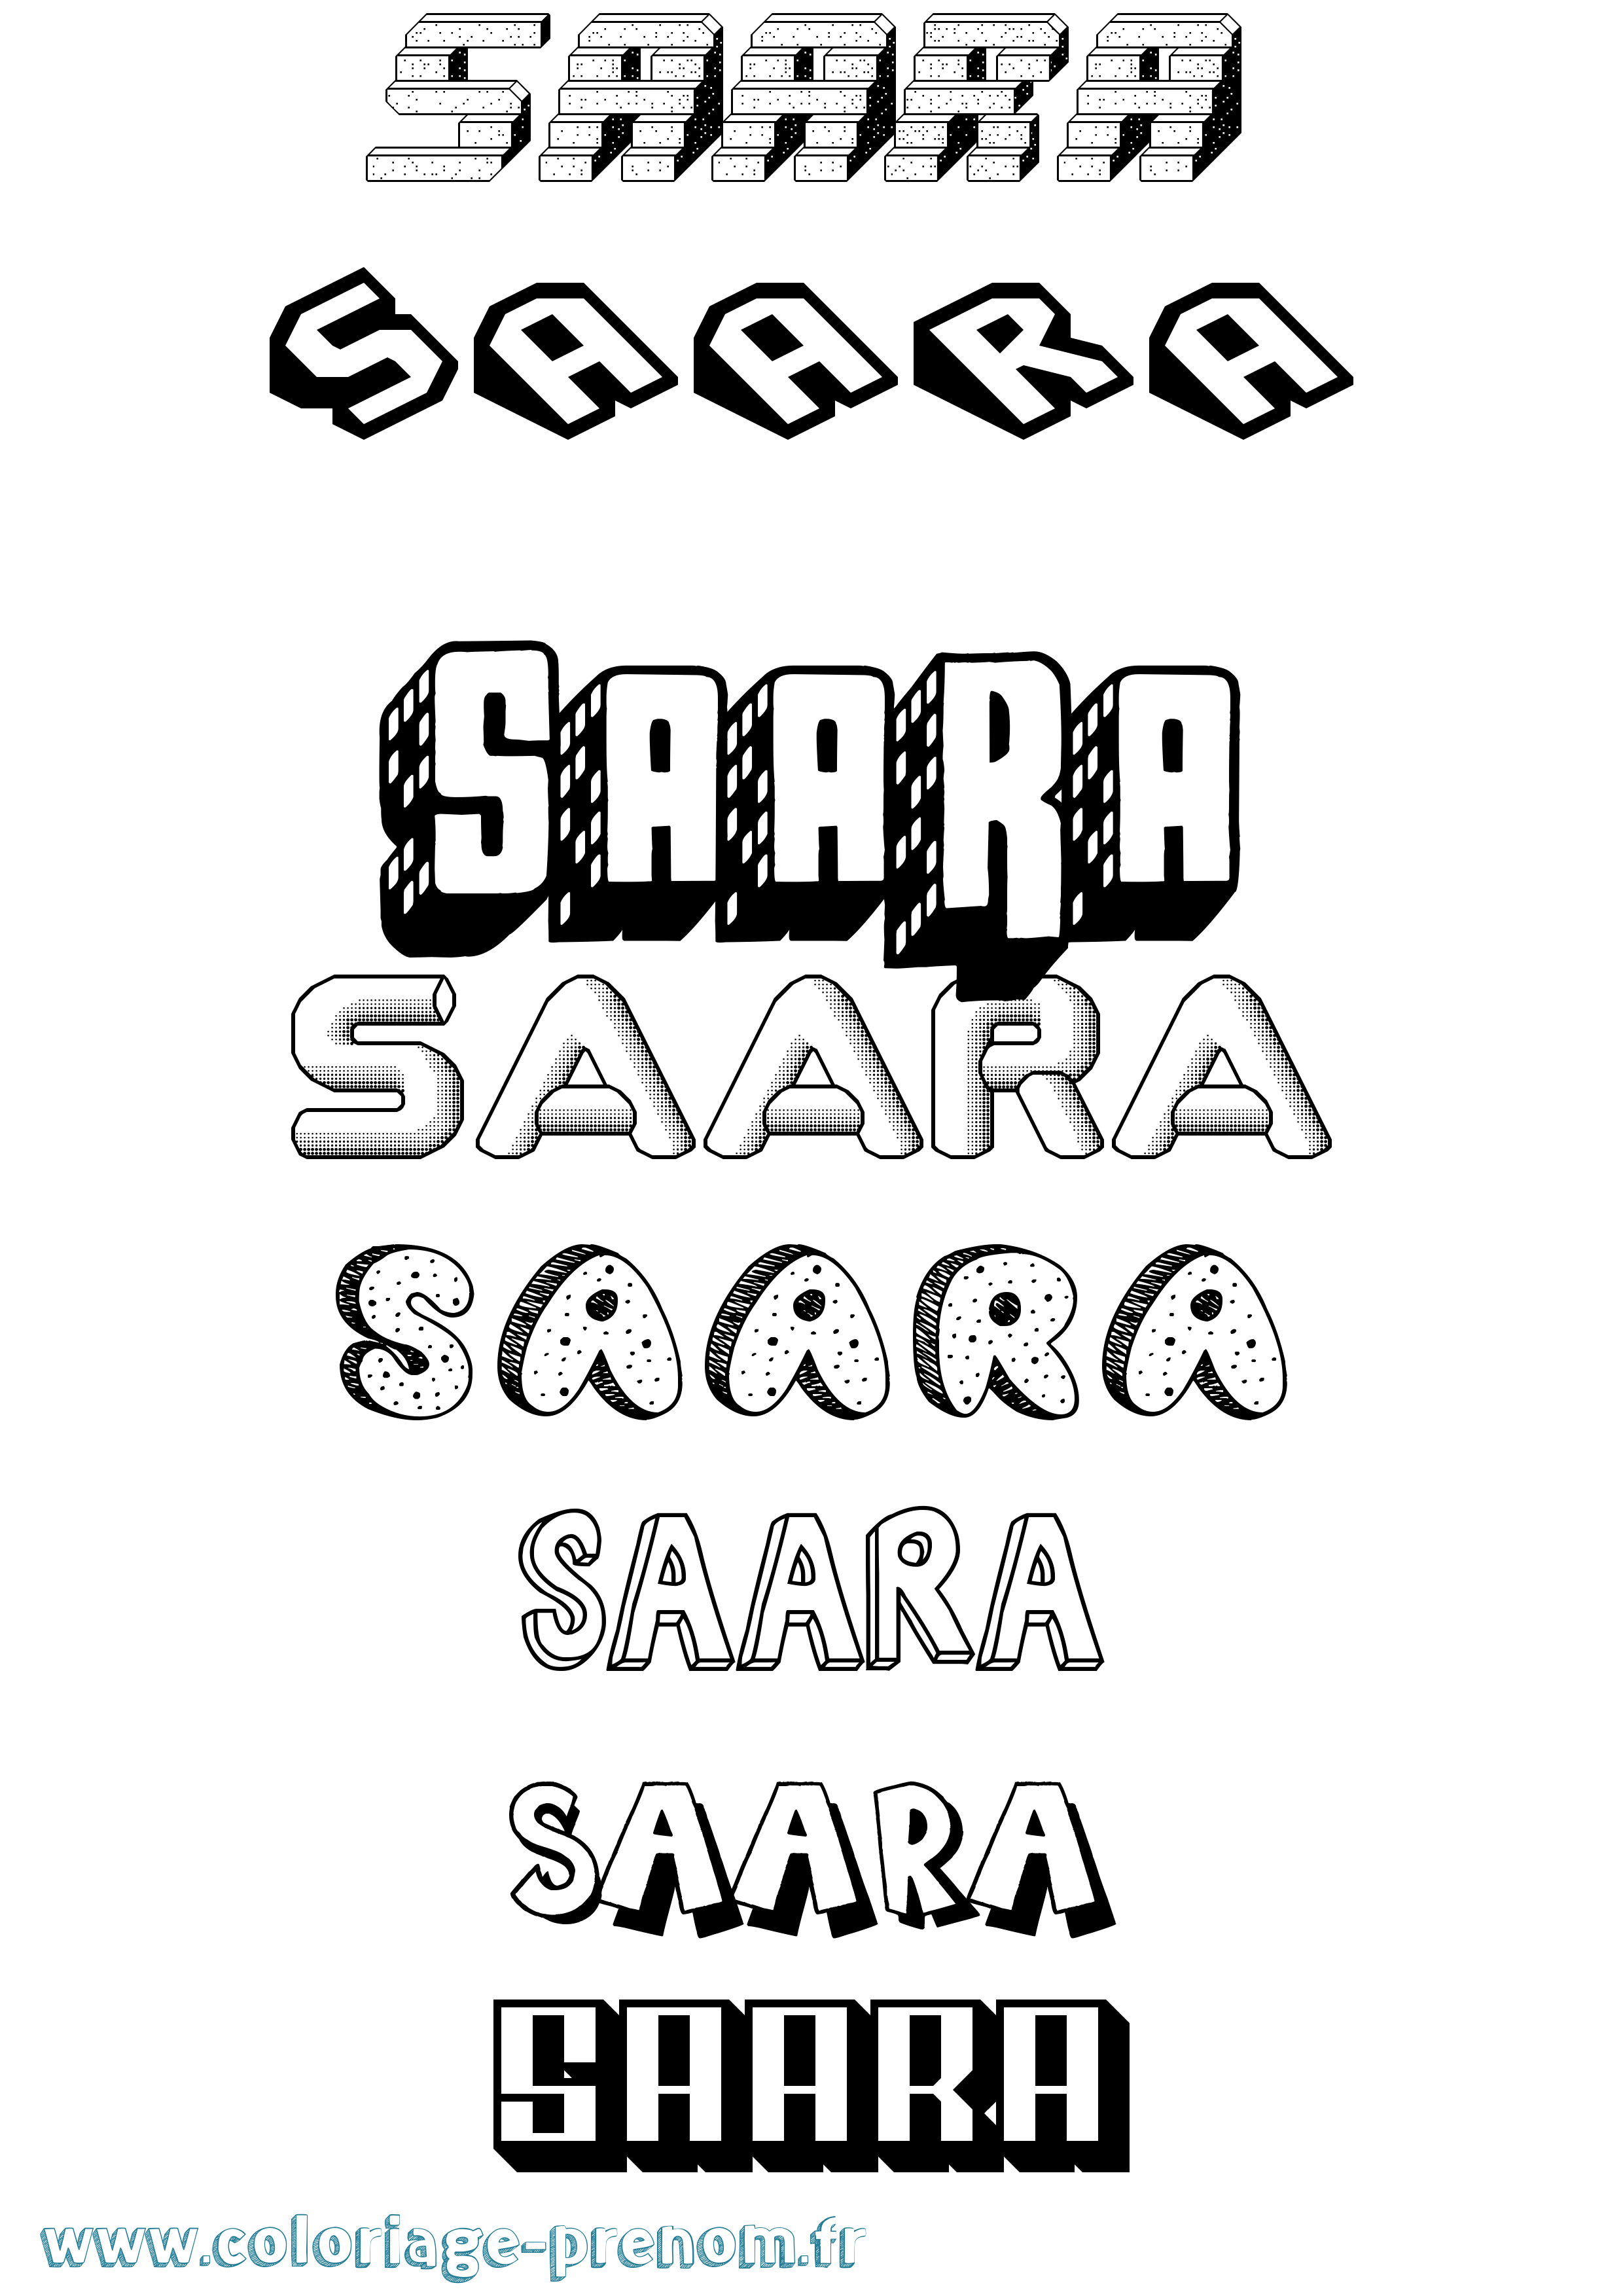 Coloriage prénom Saara Effet 3D